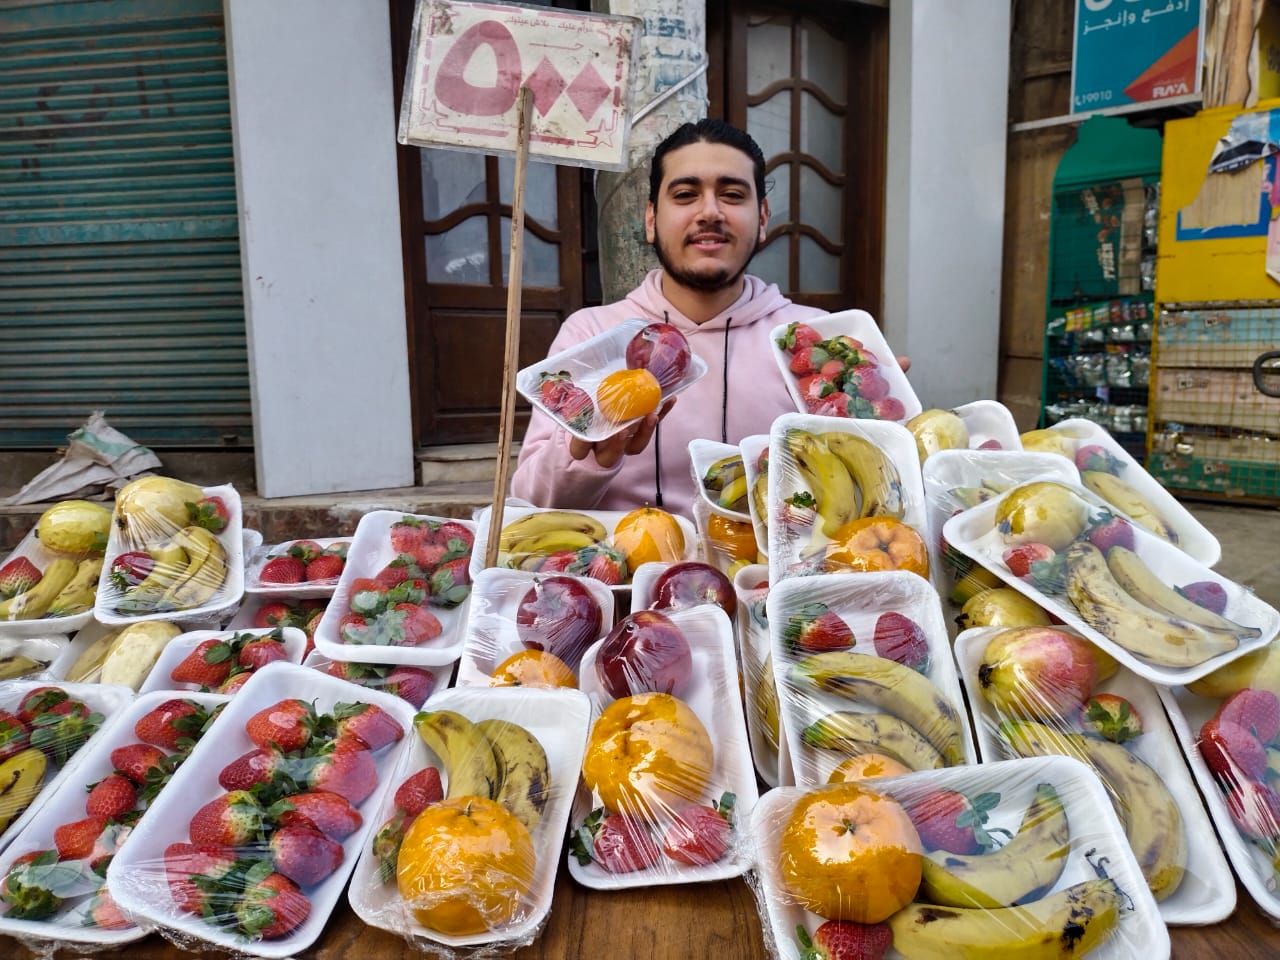 عبد الله شاب يبيع طبق الفاكهة ب 5 جنيه